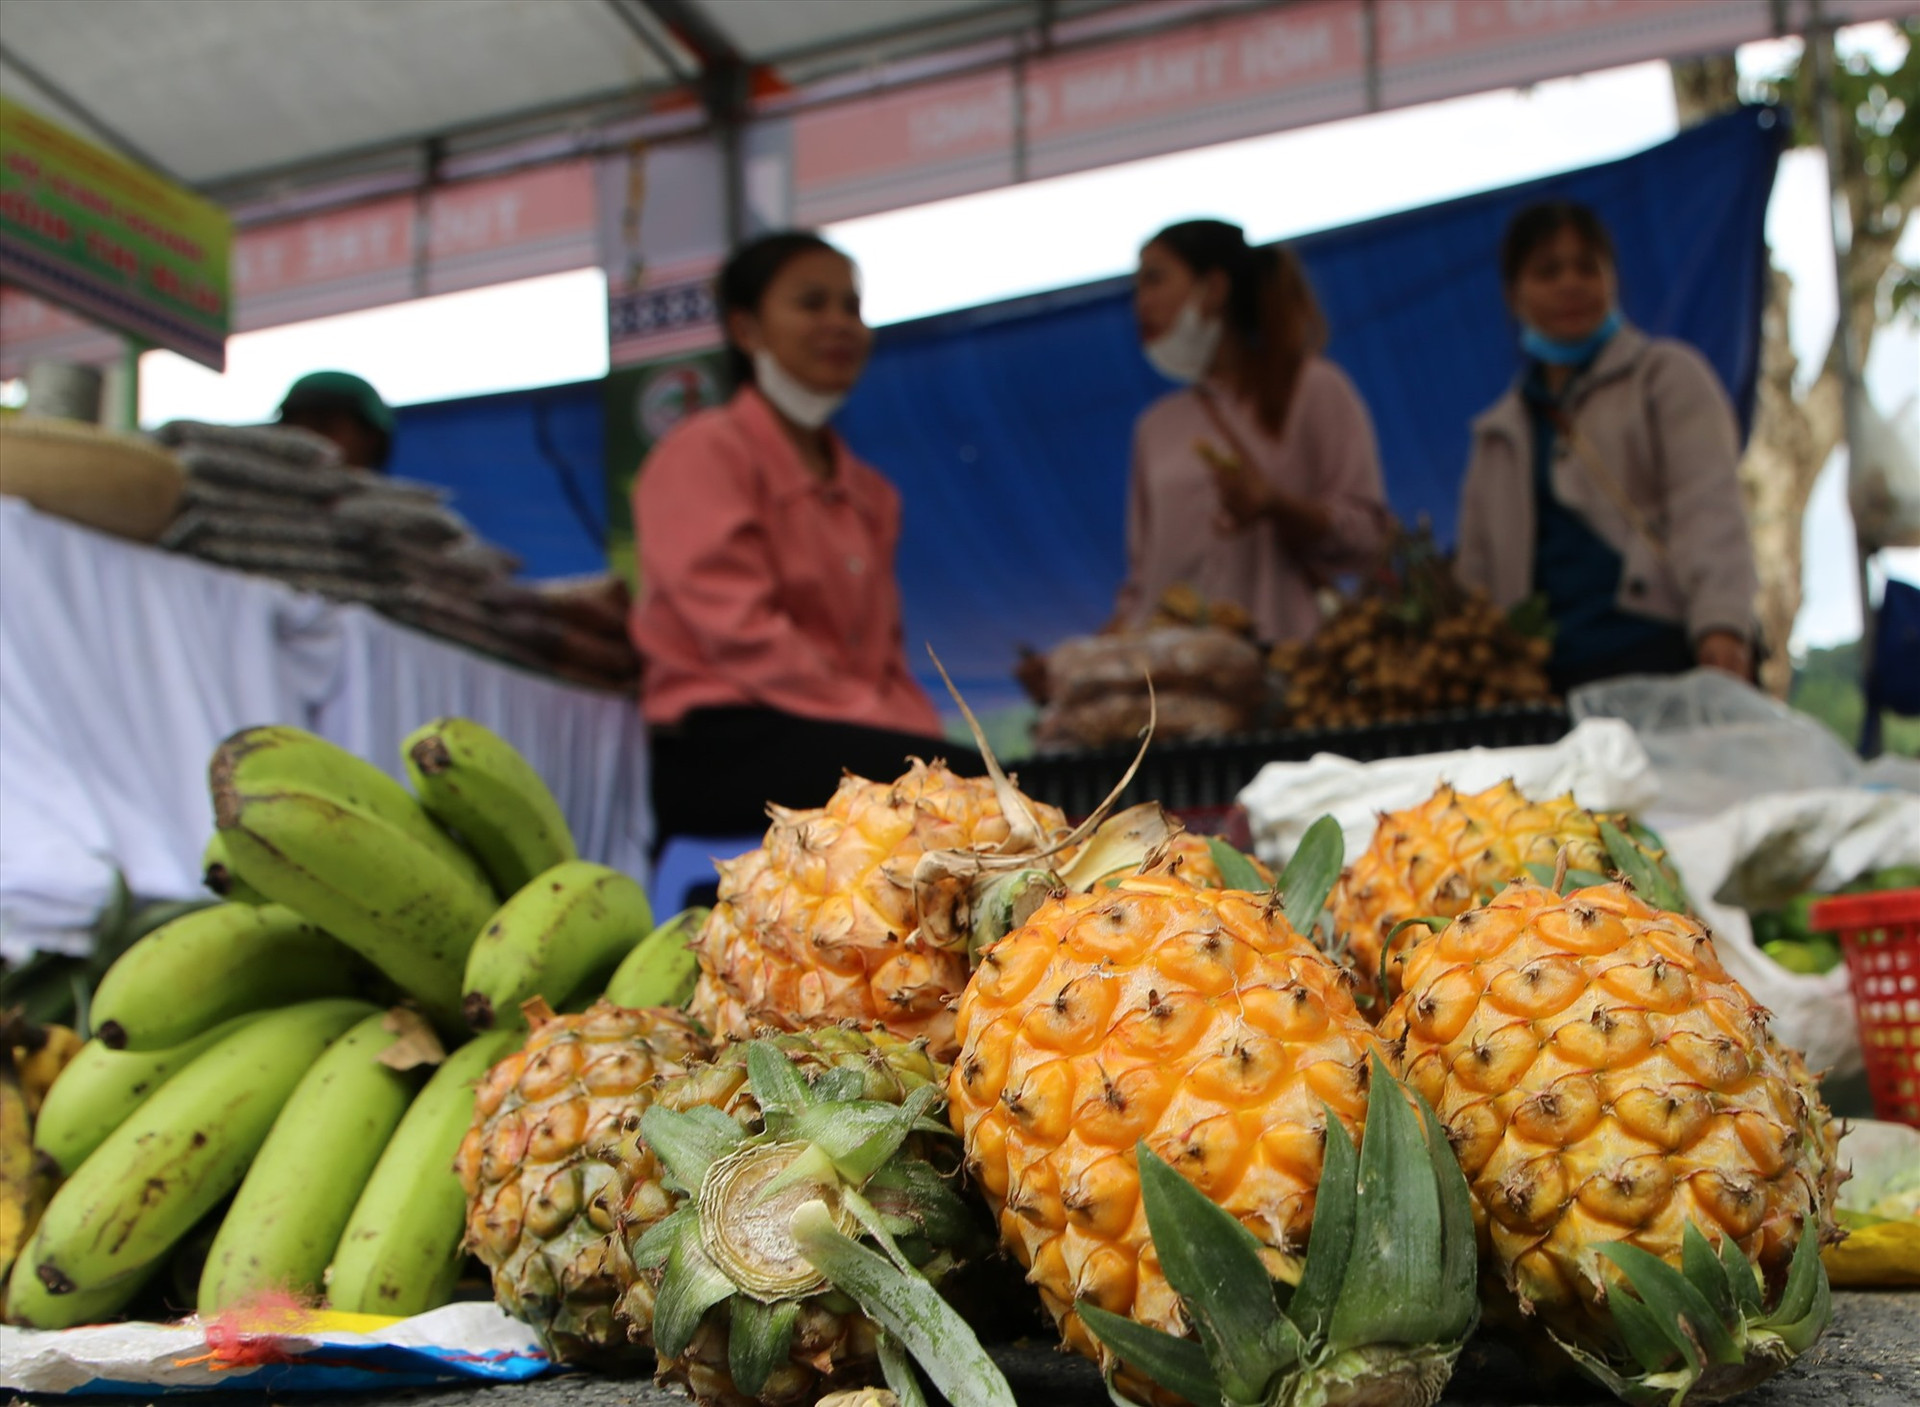 Chính quyền địa phương kỳ vọng, hội chợ là dịp để người dân làm quen với công việc buôn bán, tieue thụ nông sản, hướng đến mục tiêu giảm nghèo. Ảnh: Đ.N